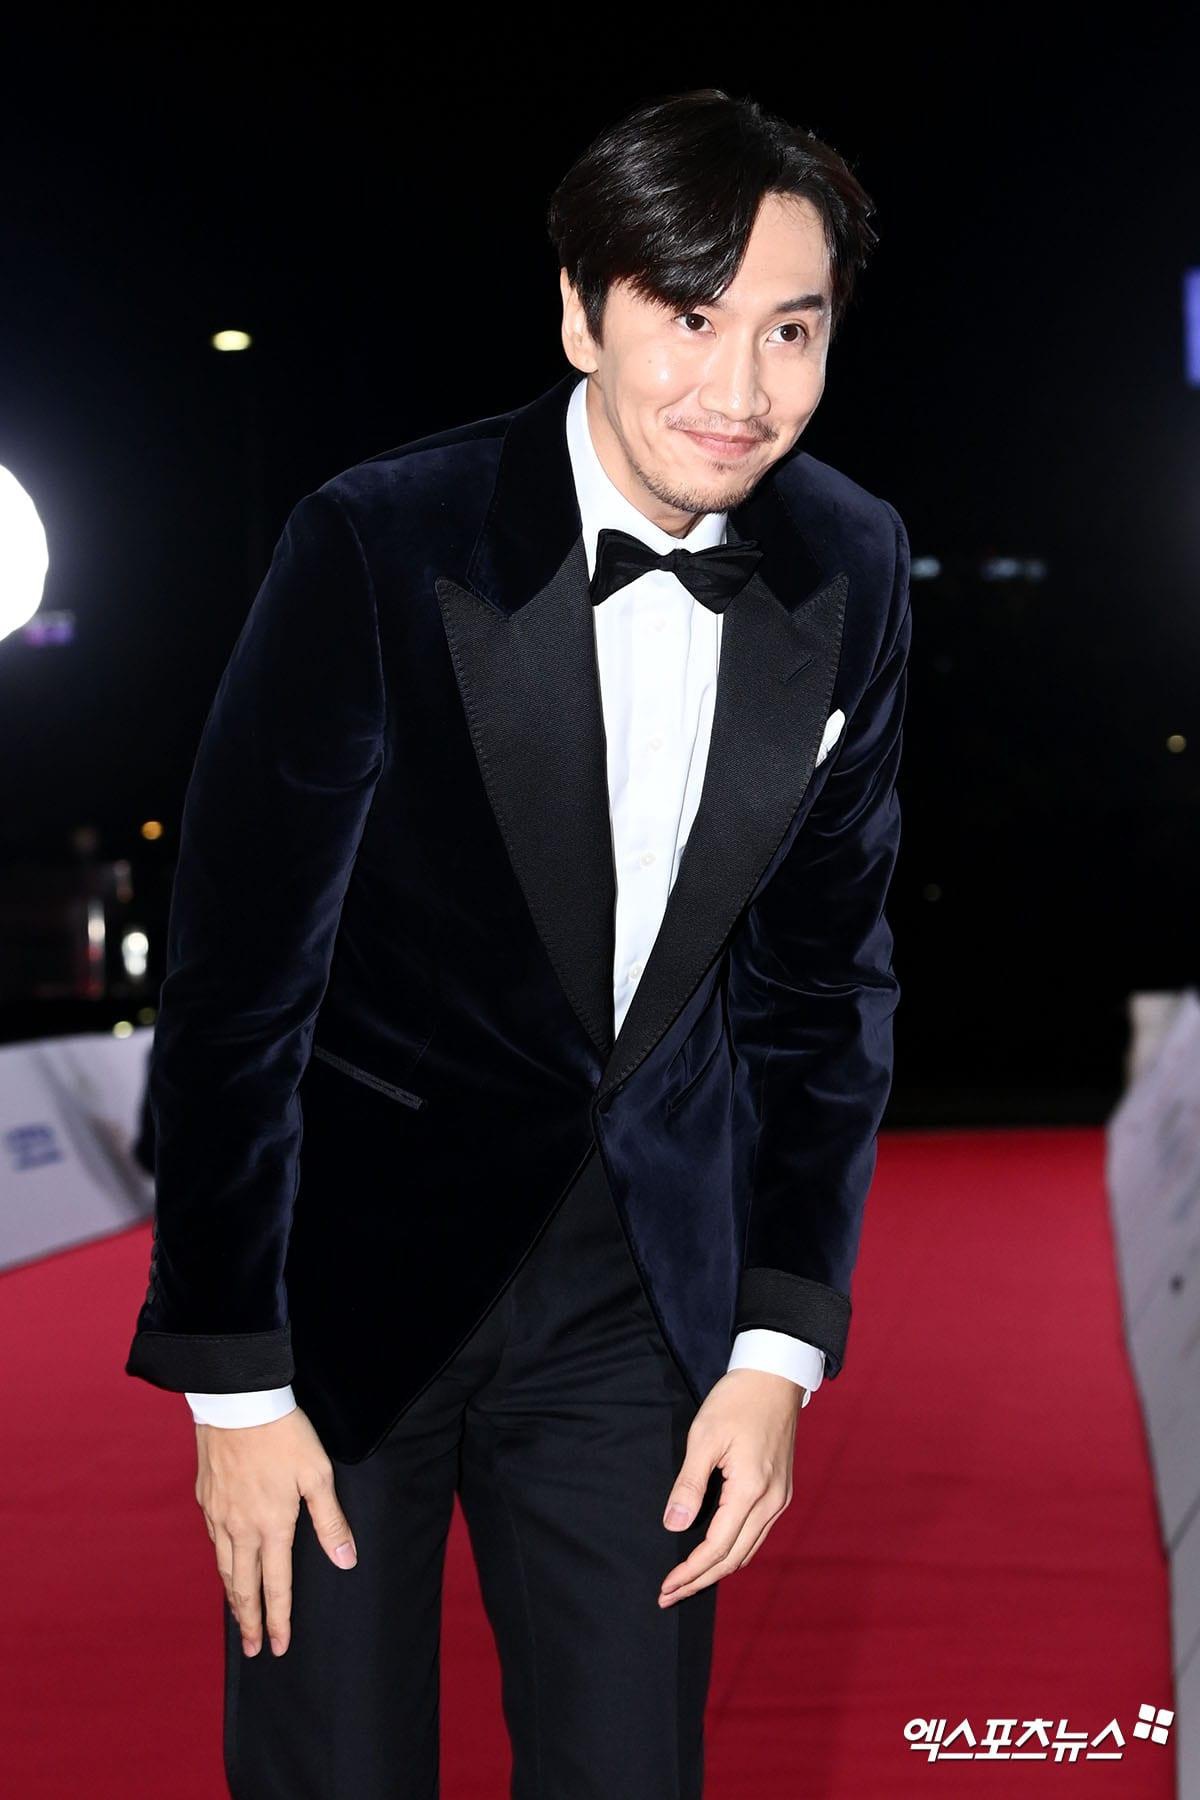 Lee Kwang Soo xuất hiện bảnh bao trong bộ vest nhung đen. Tuy nhiên, kiểu tóc bồng bềnh và tạo hình để râu khiến nam diễn viên trông có vẻ 'dừ' hơn bình thường